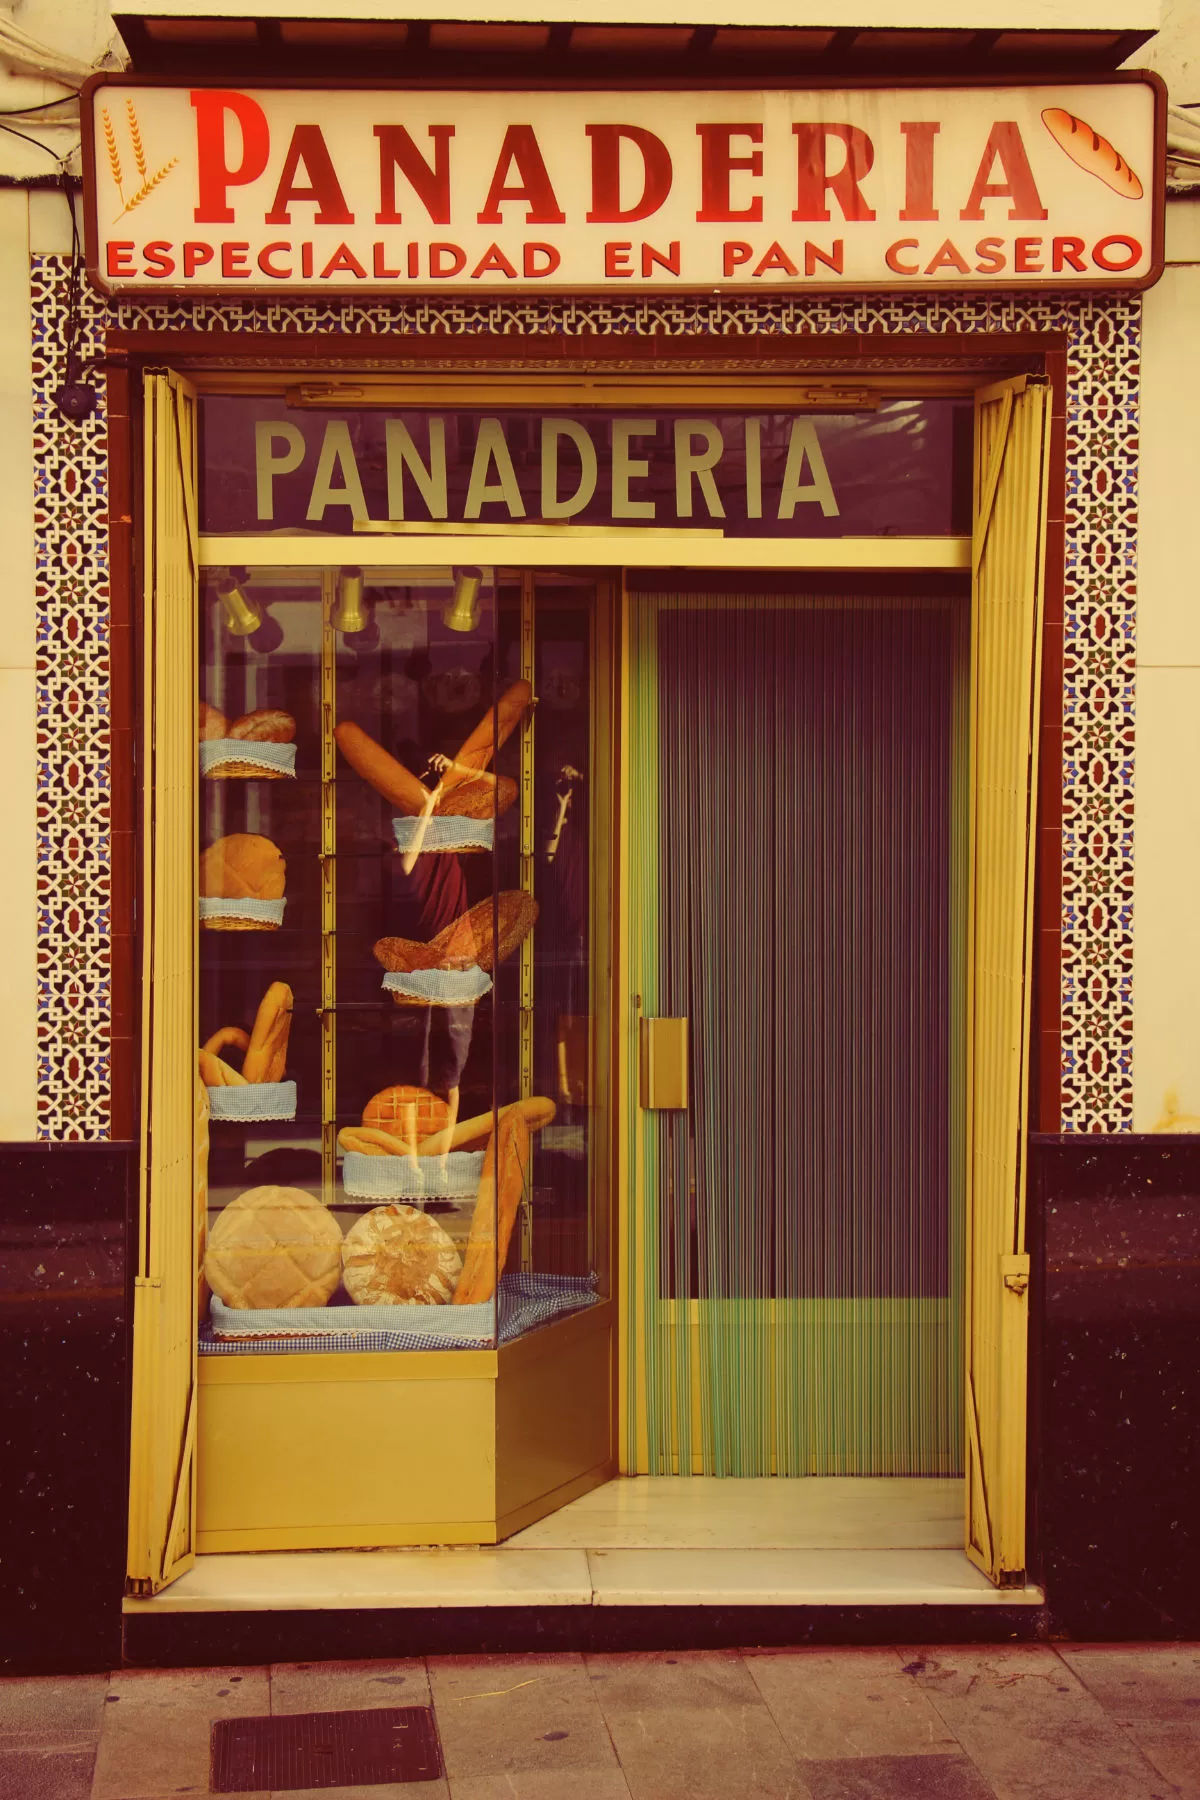 The front shop door of a bread shop in Spain